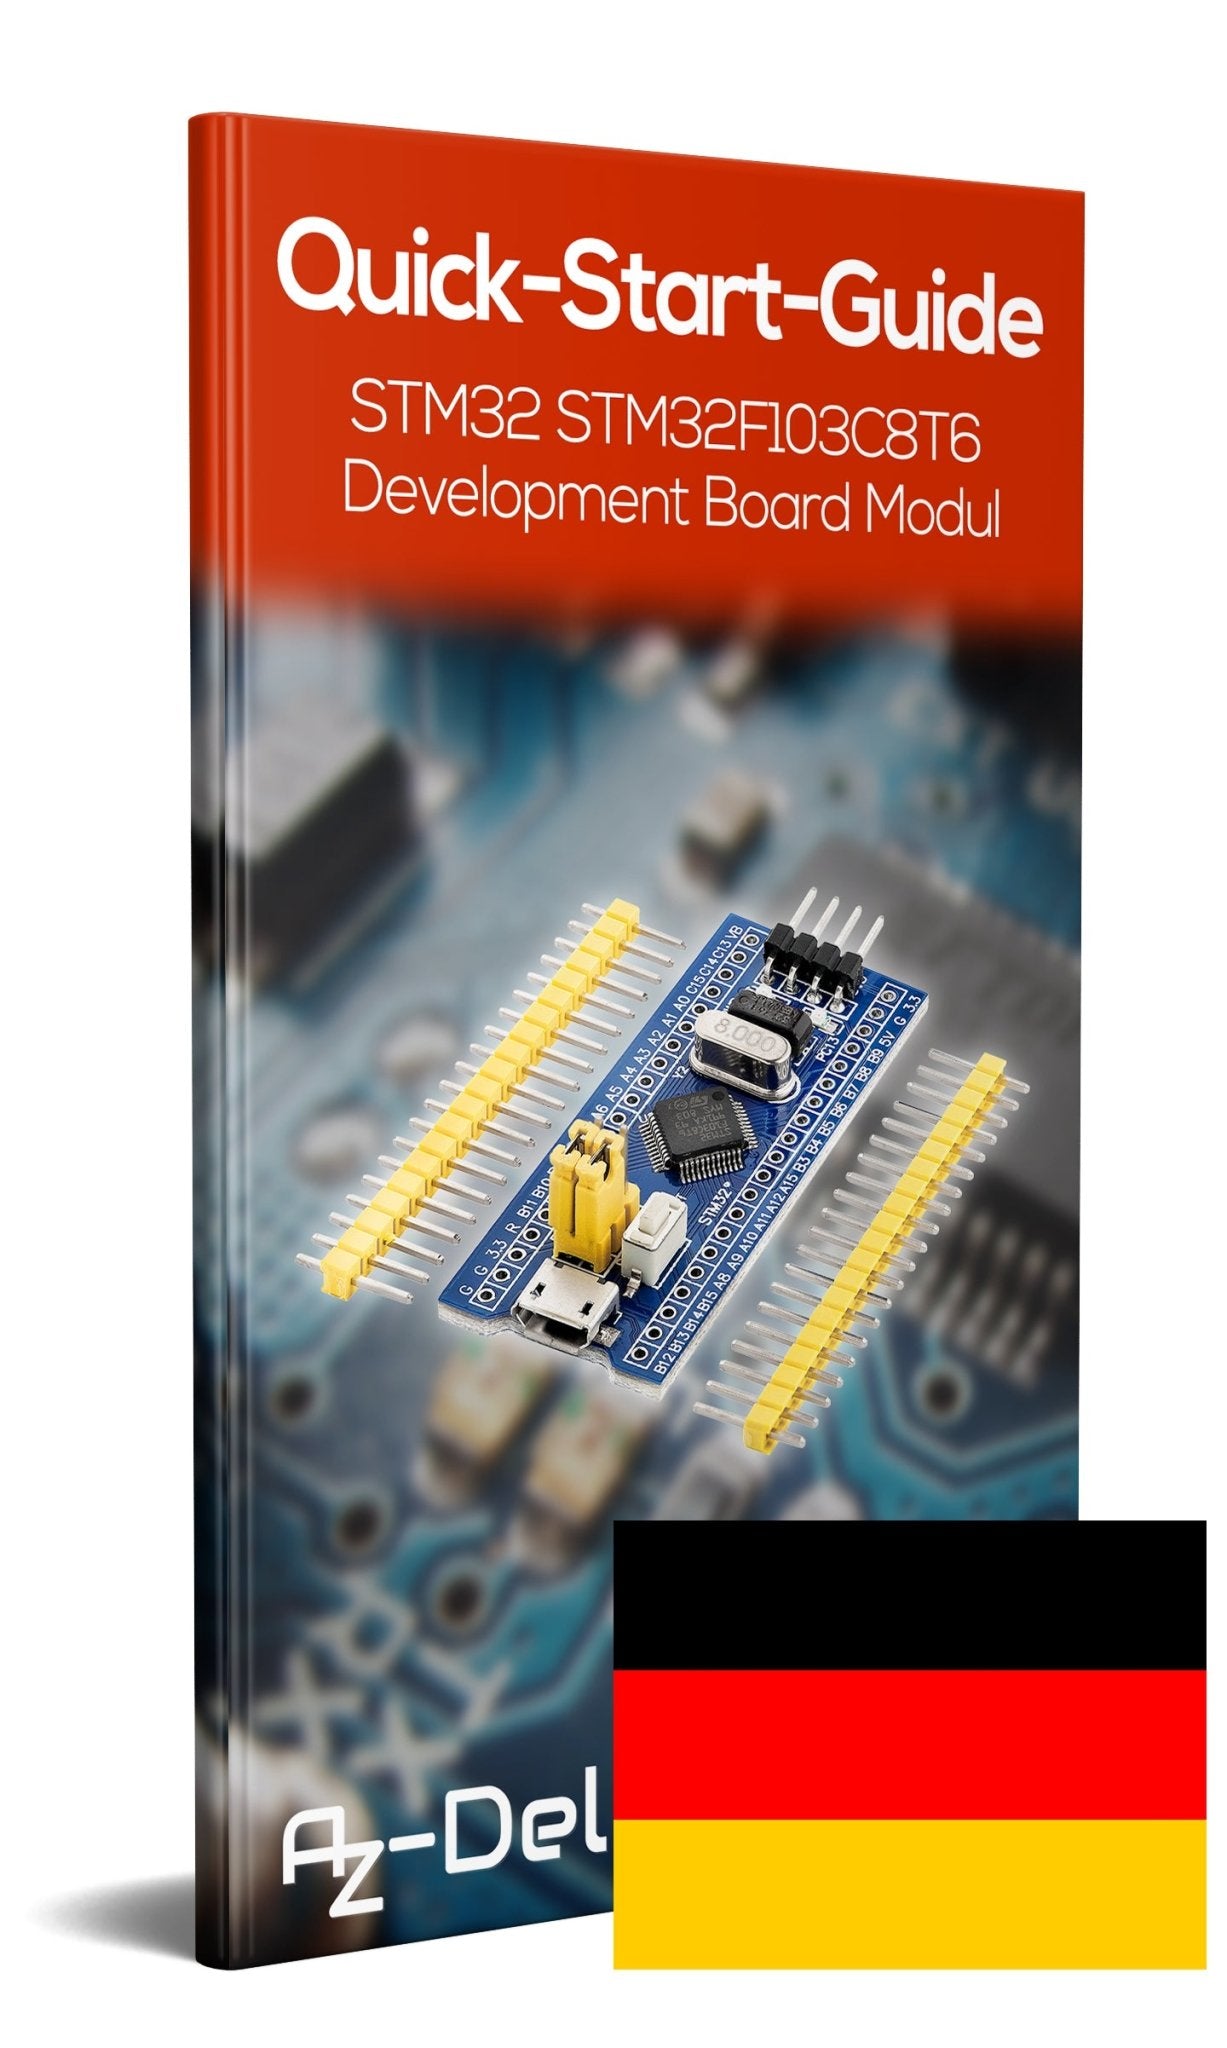 Modulo della scheda di sviluppo "Bluepill" con processore ARM Cortex M3